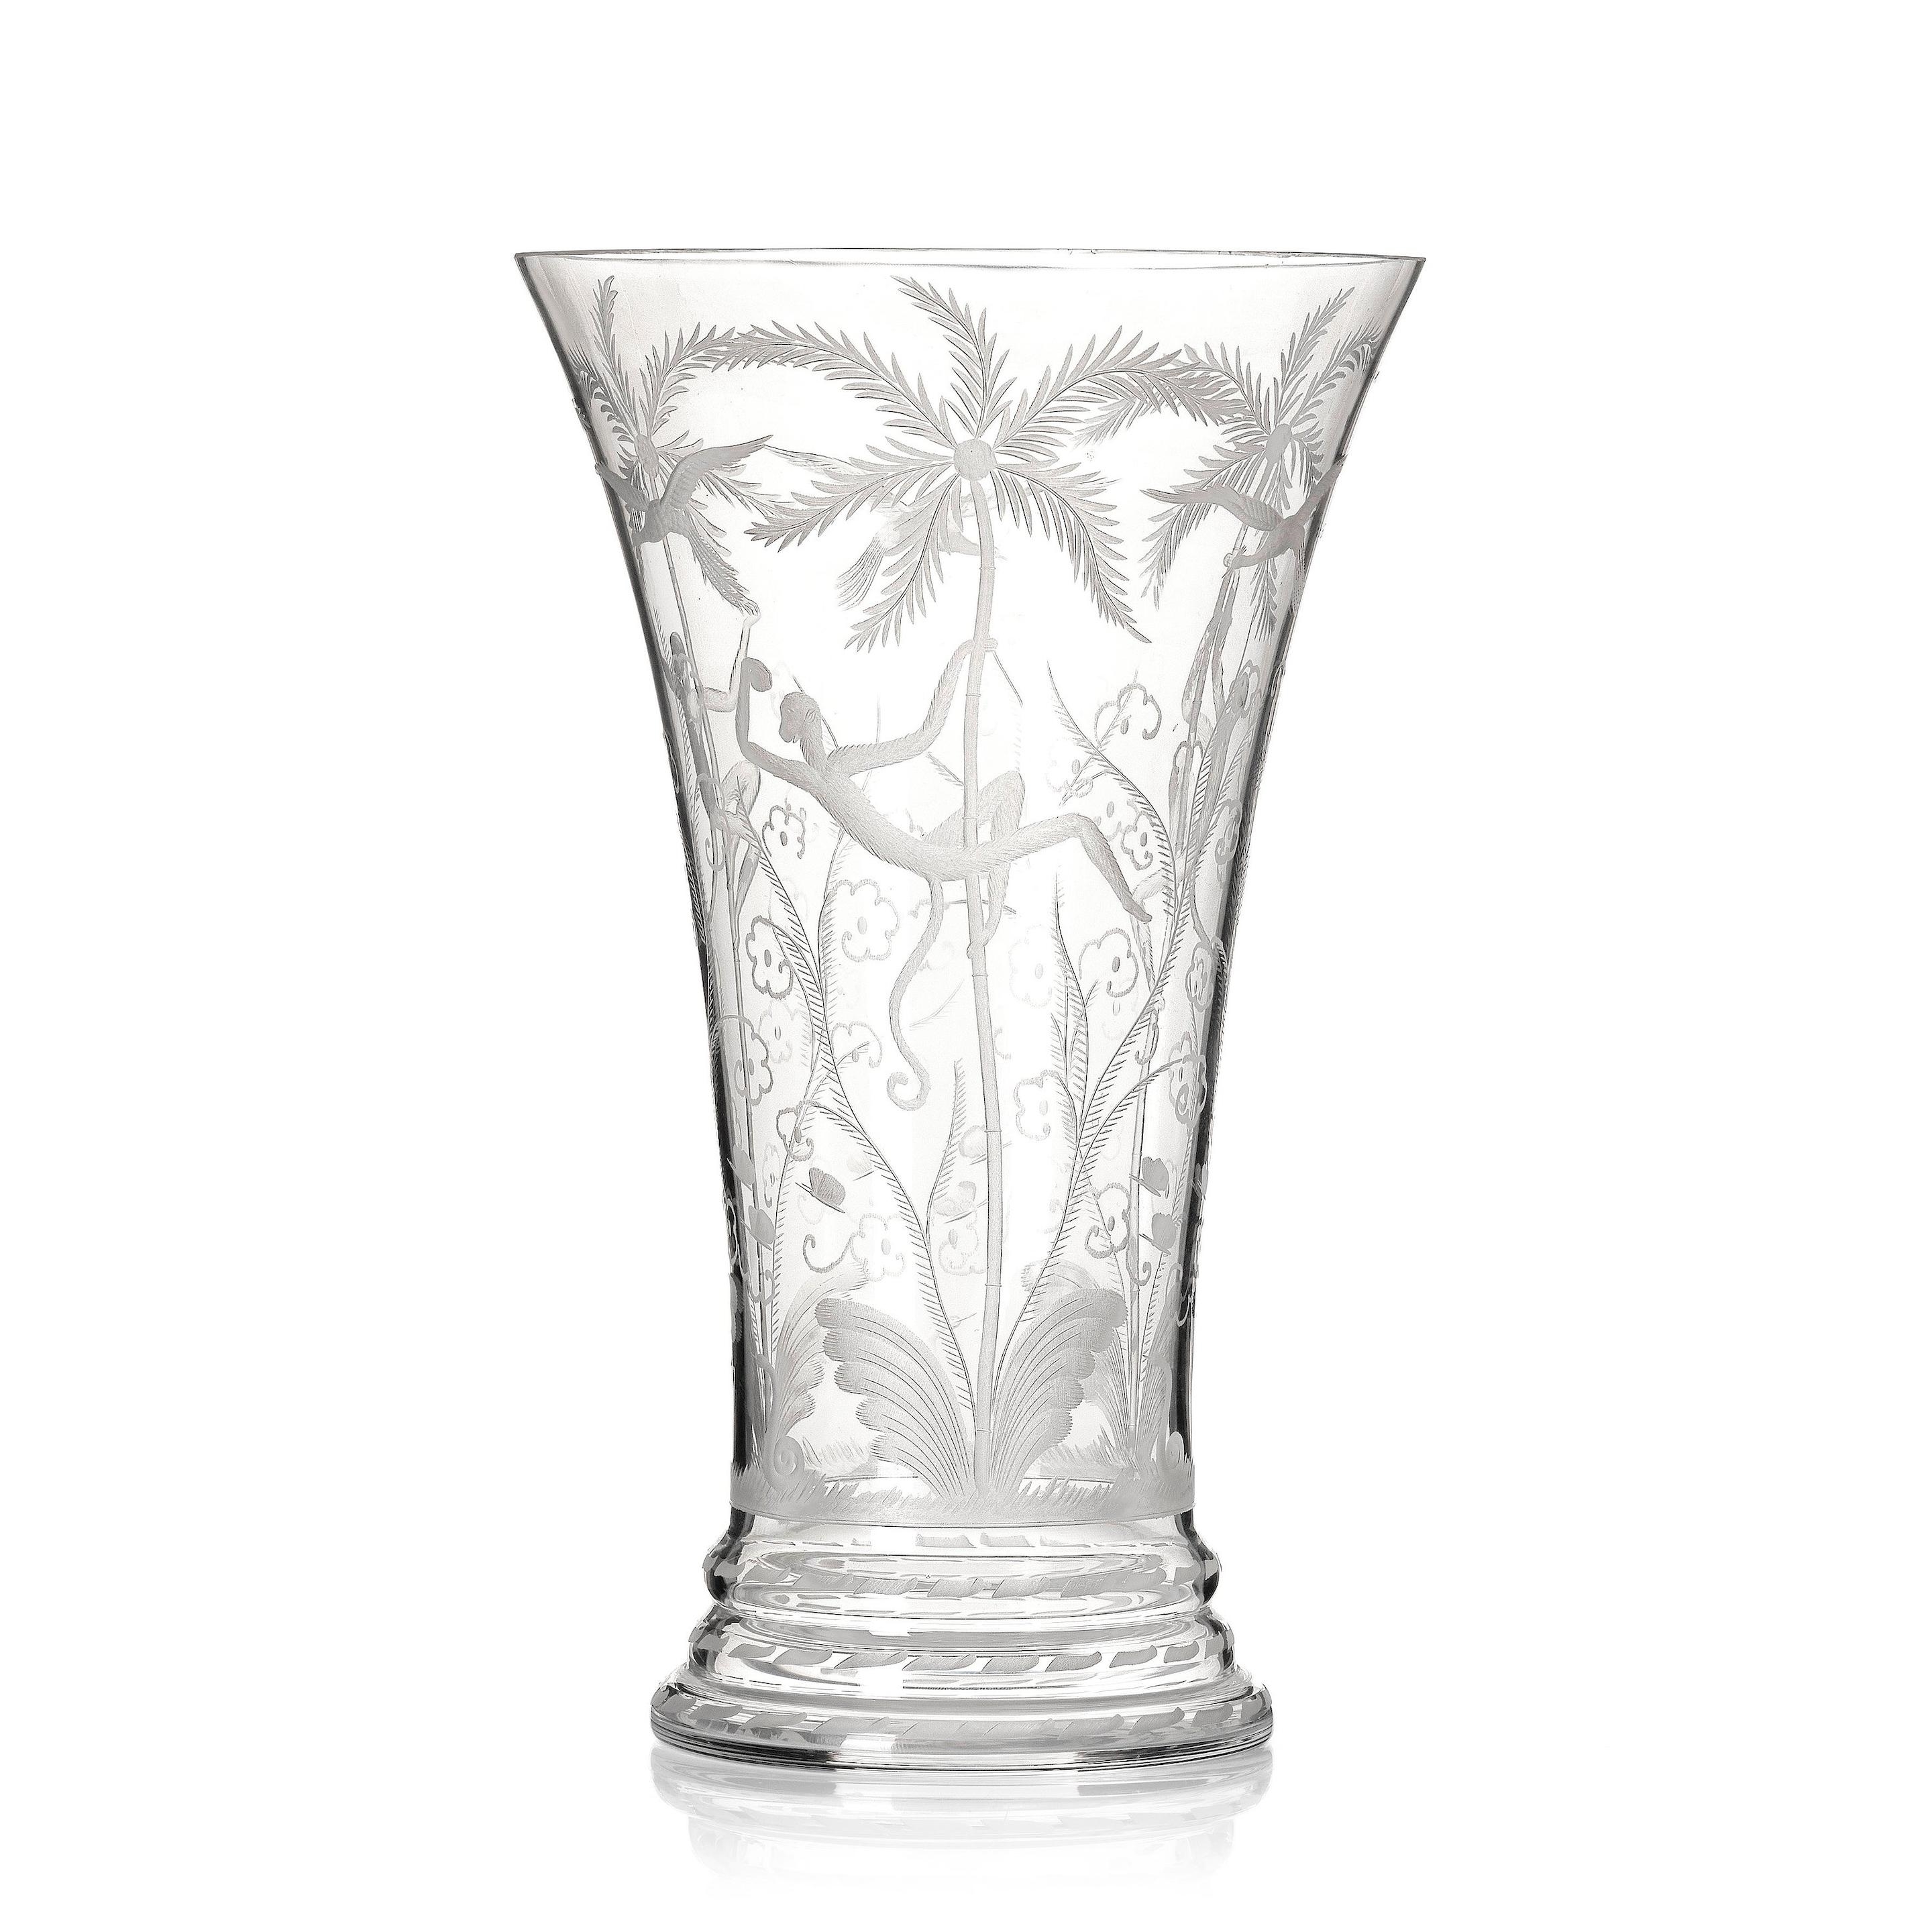 Edward Hald, An engraved glass vase 'Urskogen', Orrefors, Sweden, designed in 1923/24, executed in 1924. by Edward Hald